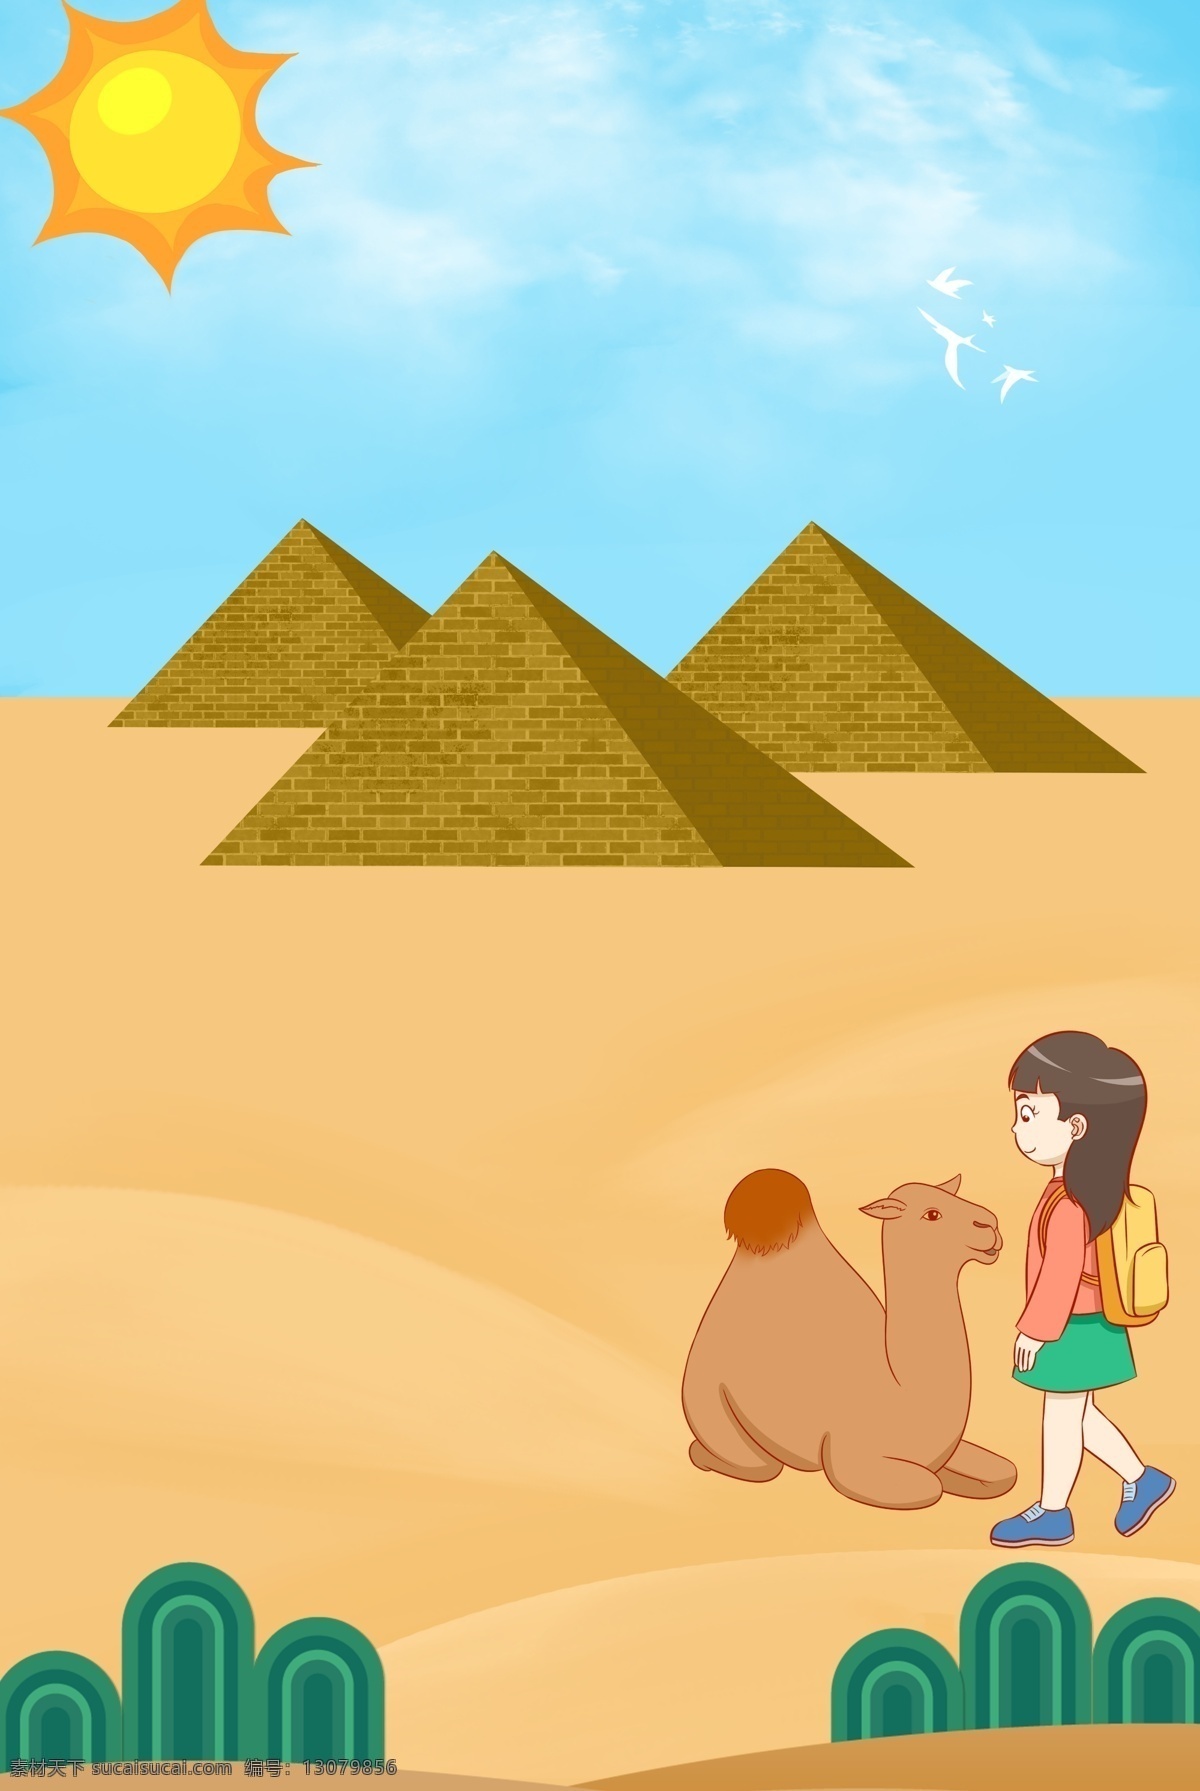 沙漠 金字塔 旅行 背景 飞机 出境 旅游 骆驼 动物 出游 沙漠植被